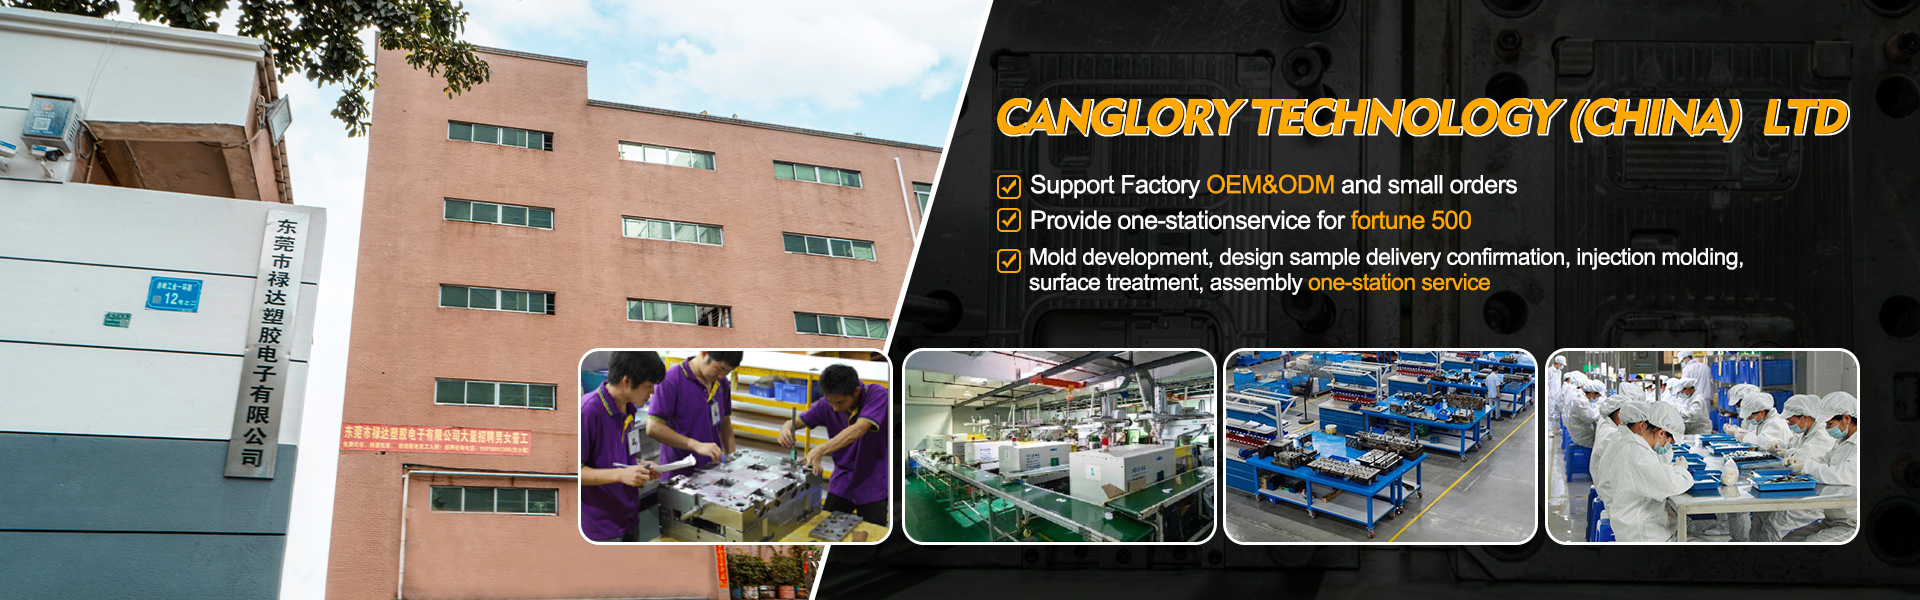 У дома - формоване, инжектиране, производител на оригинално оборудване|Canglory Technology (China) Ltd